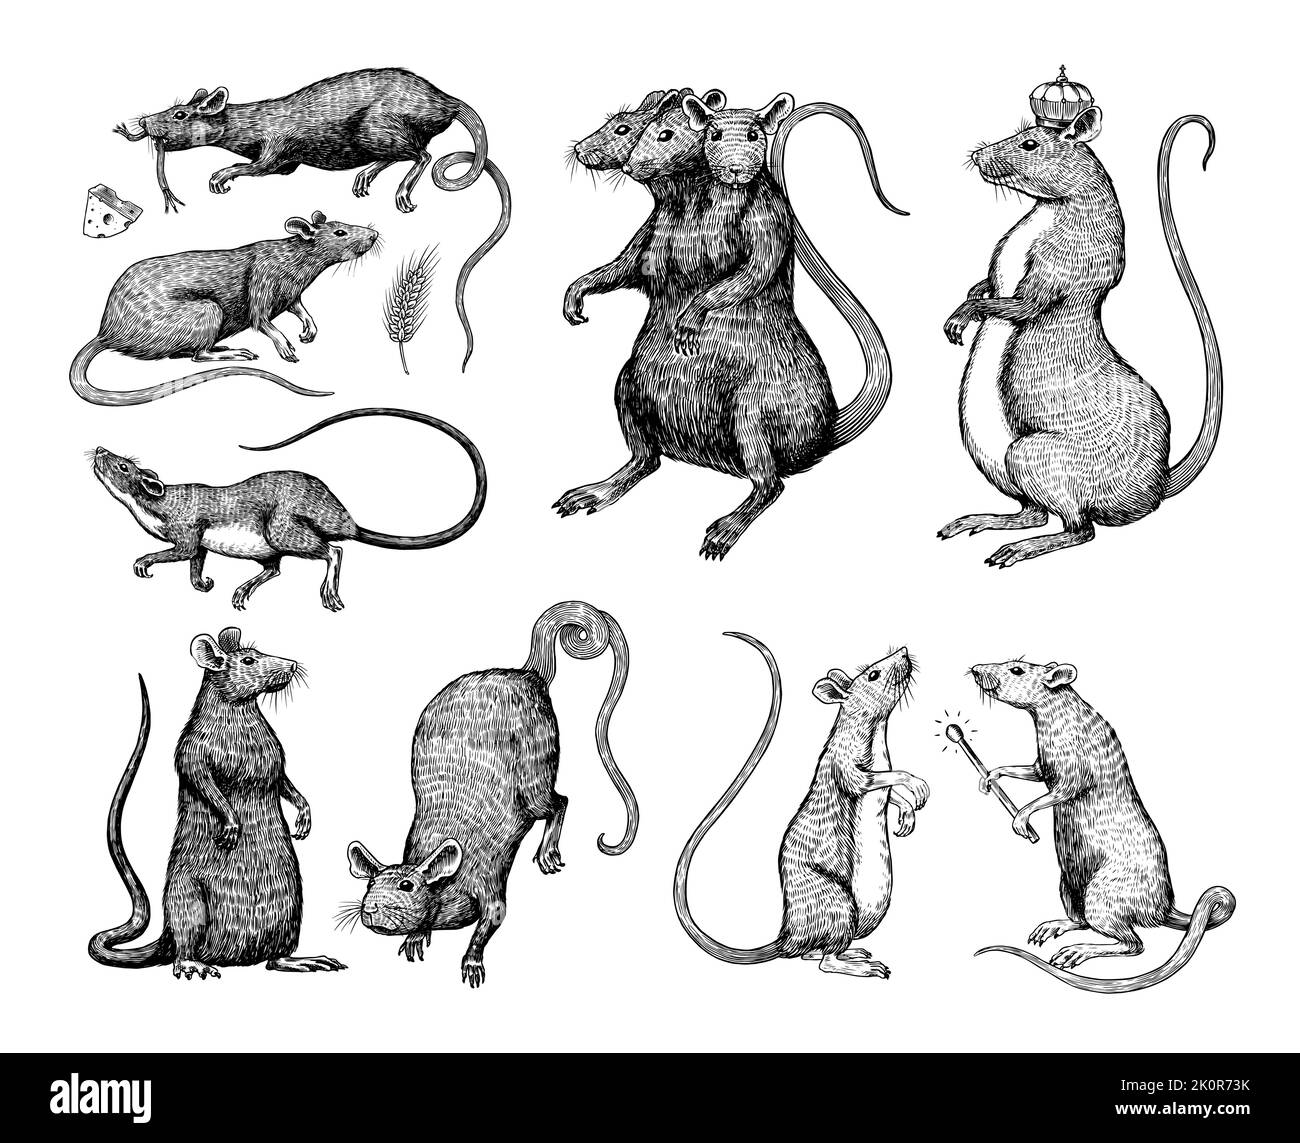 Roi de rat ou souris. Animal sauvage graphique. Croquis vintage dessiné à la main. Éléments de grunge gravés. Illustration de Vecteur